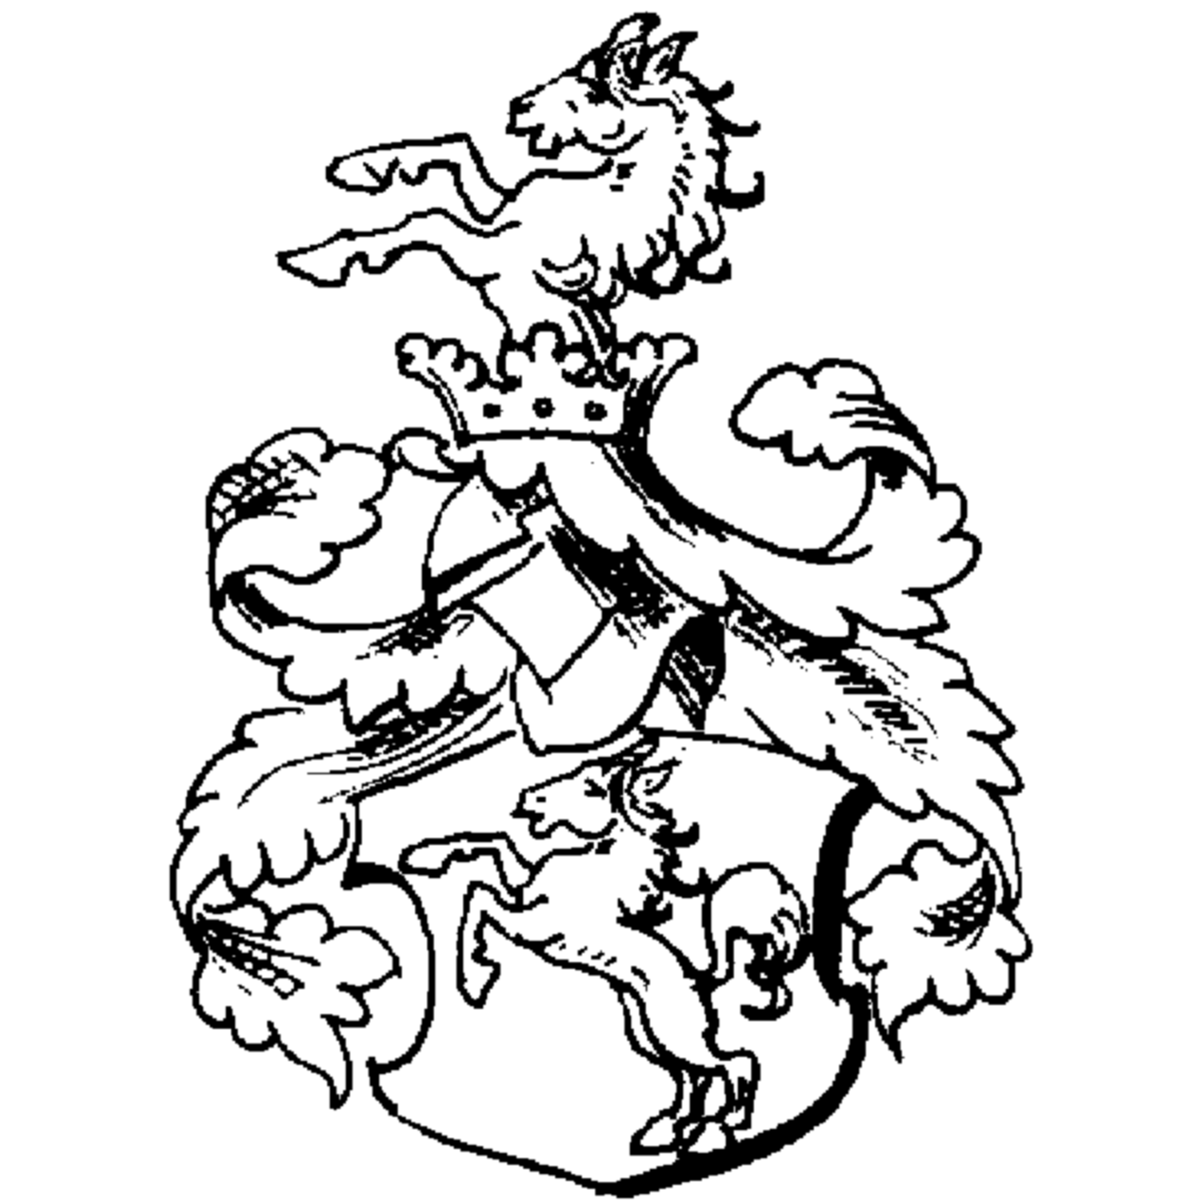 Wappen der Familie Lobhartzberger